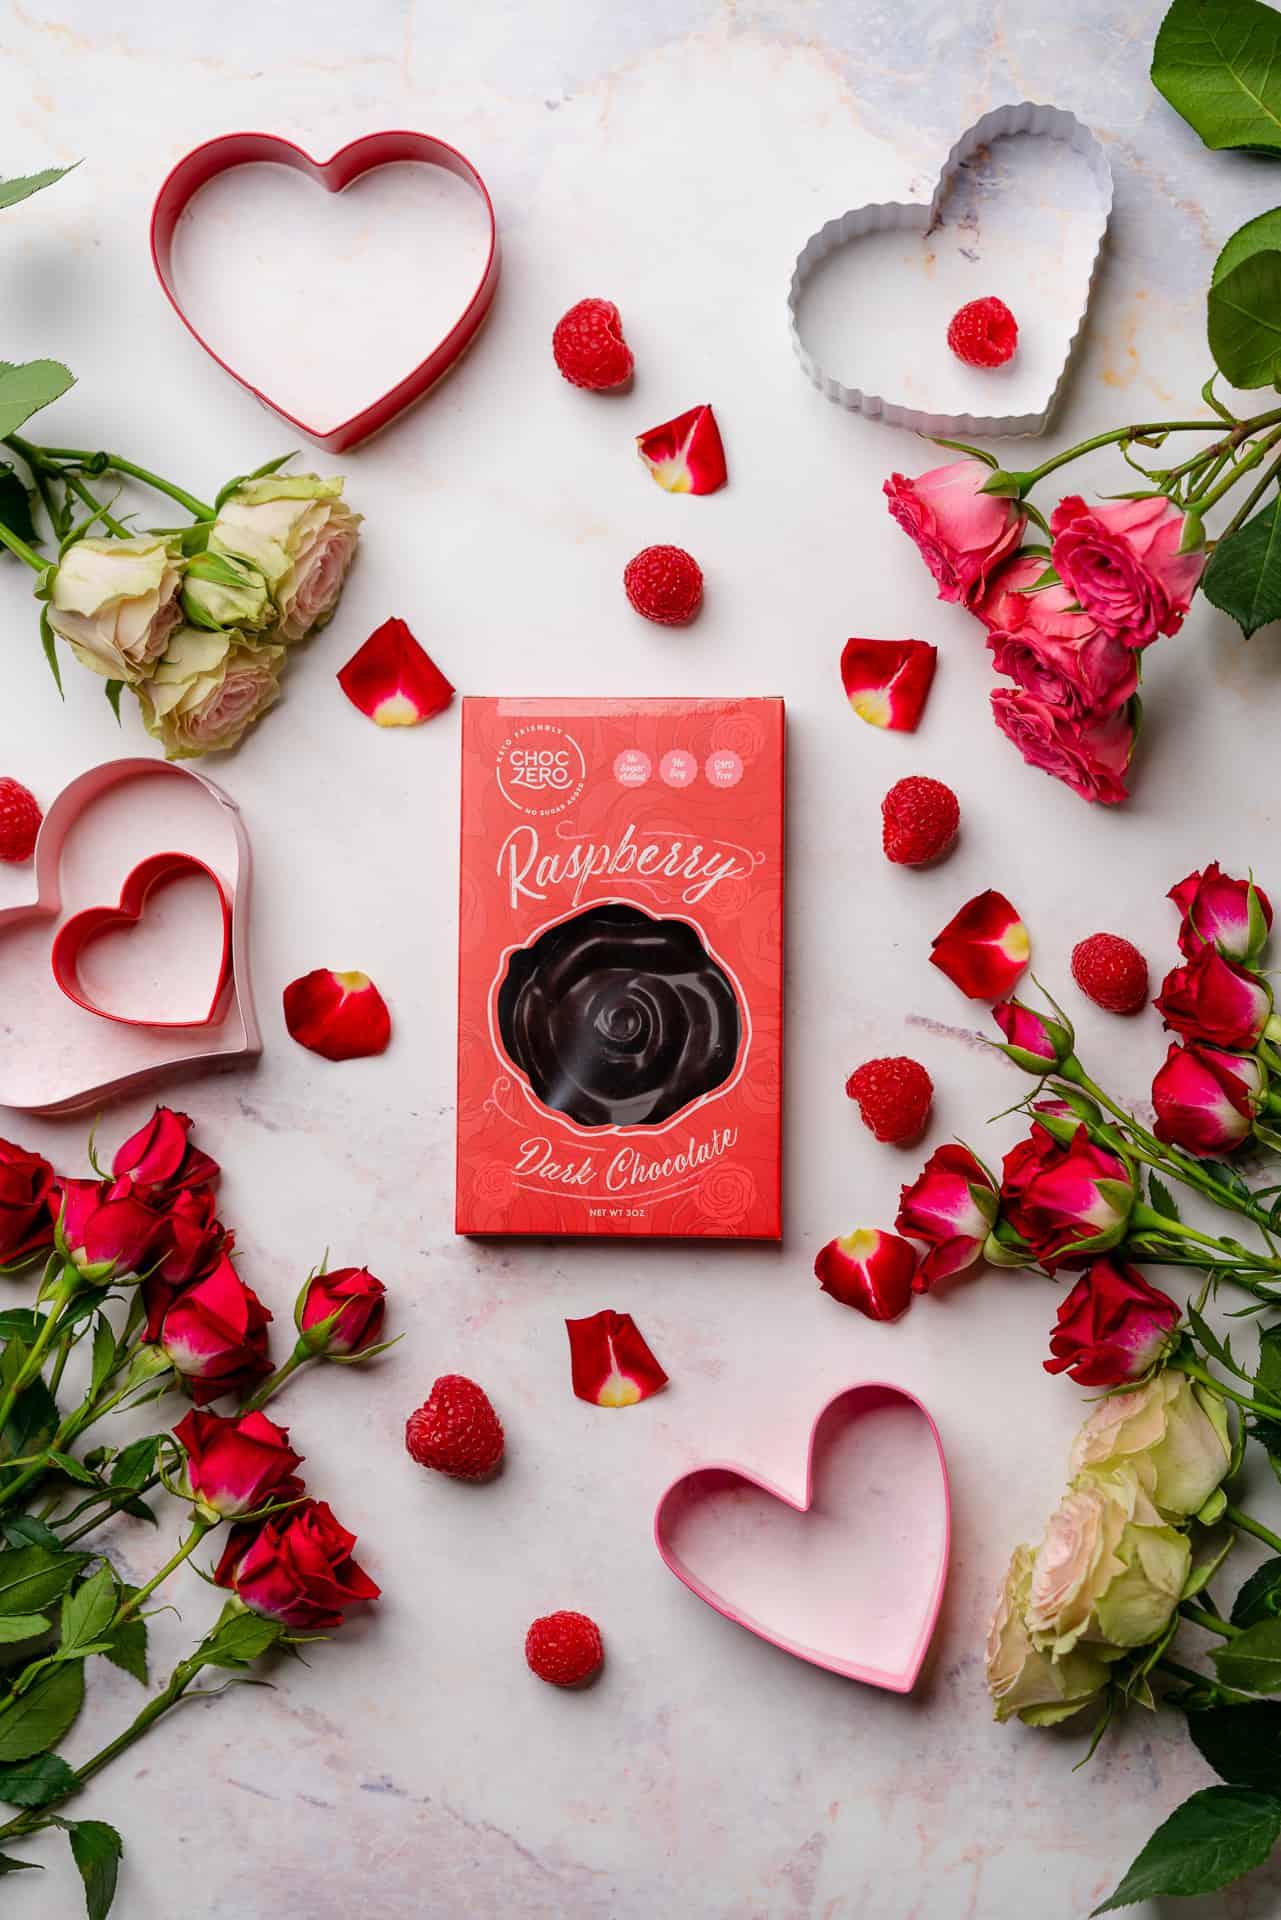 Choc Zero raspberry dark chocolate bars with roses and valentine's day props